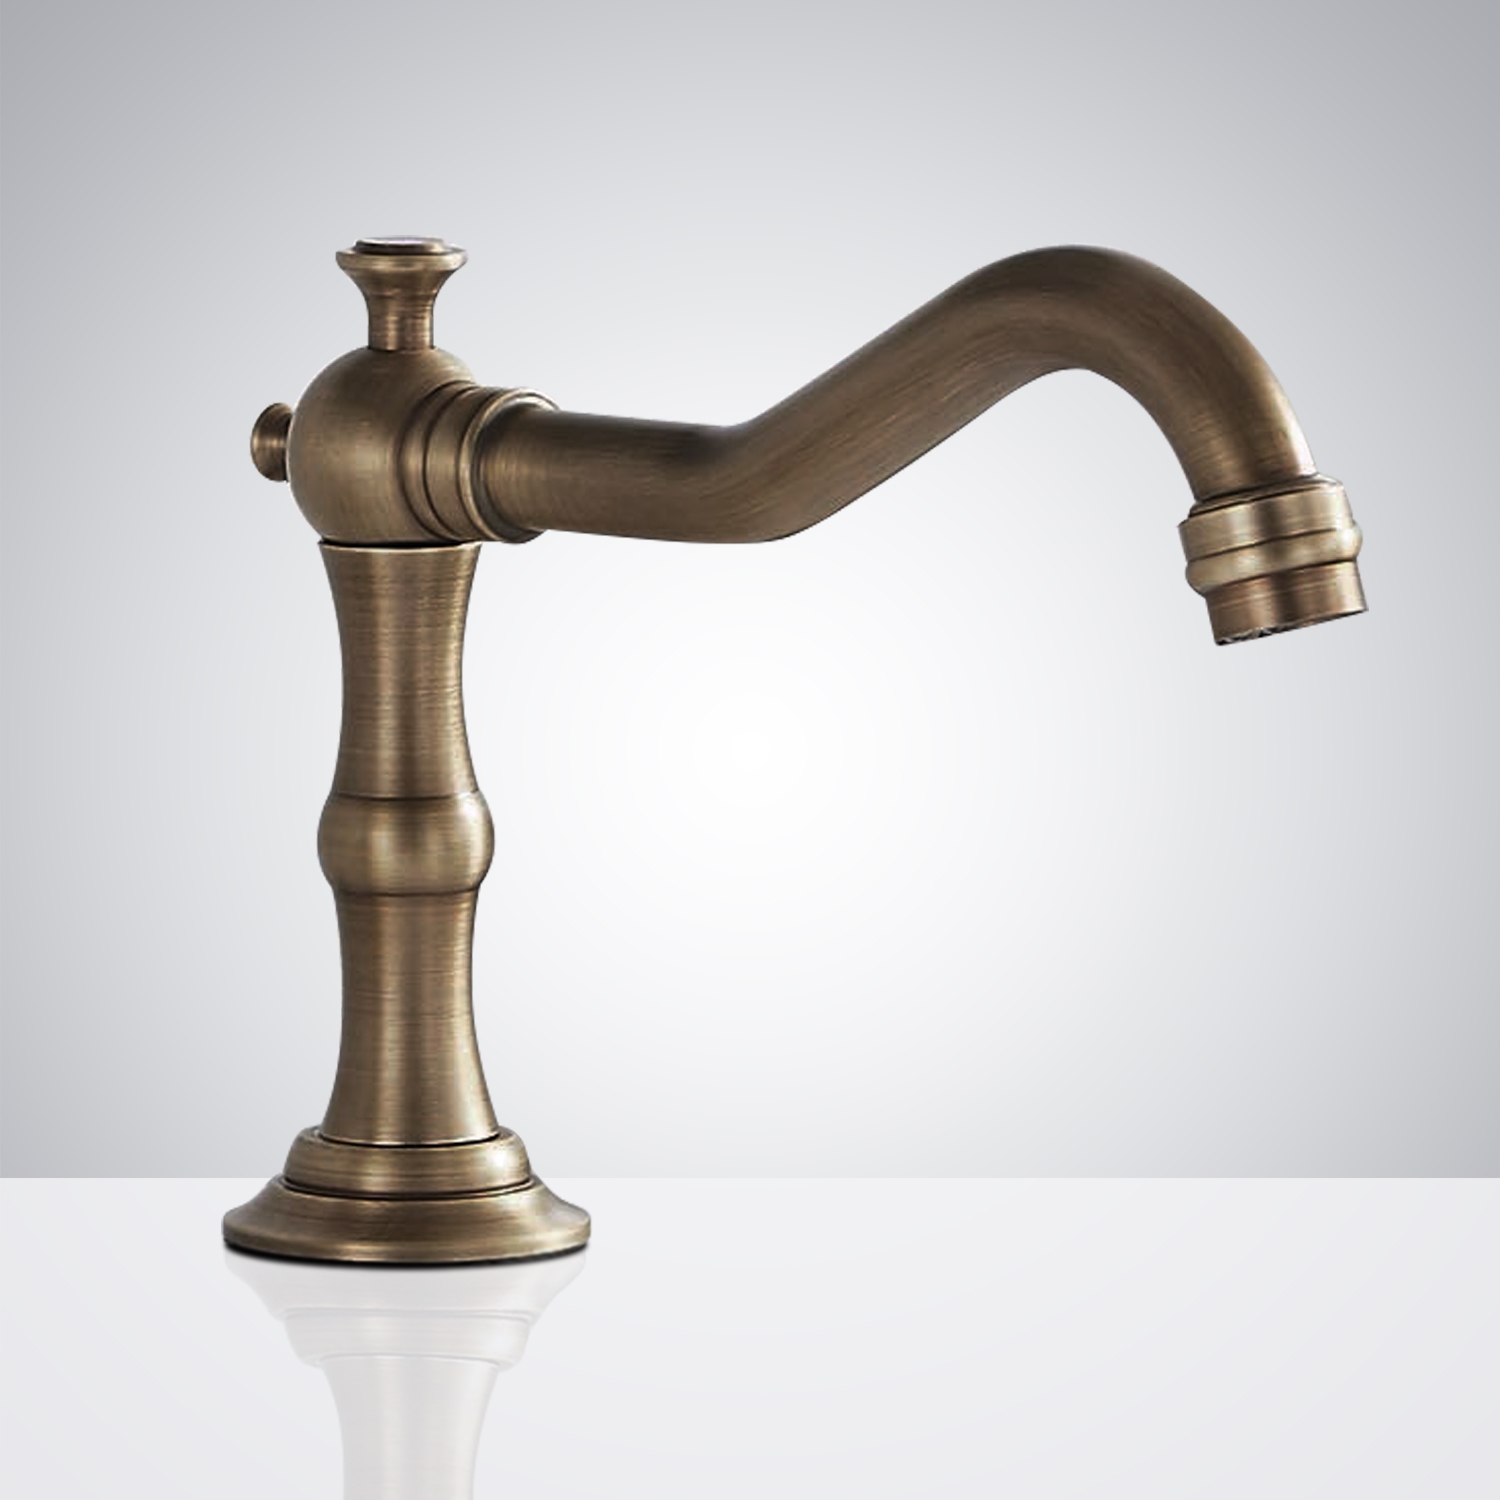 Fontana Antique Commercial Automatic Touchless Sensor Faucet